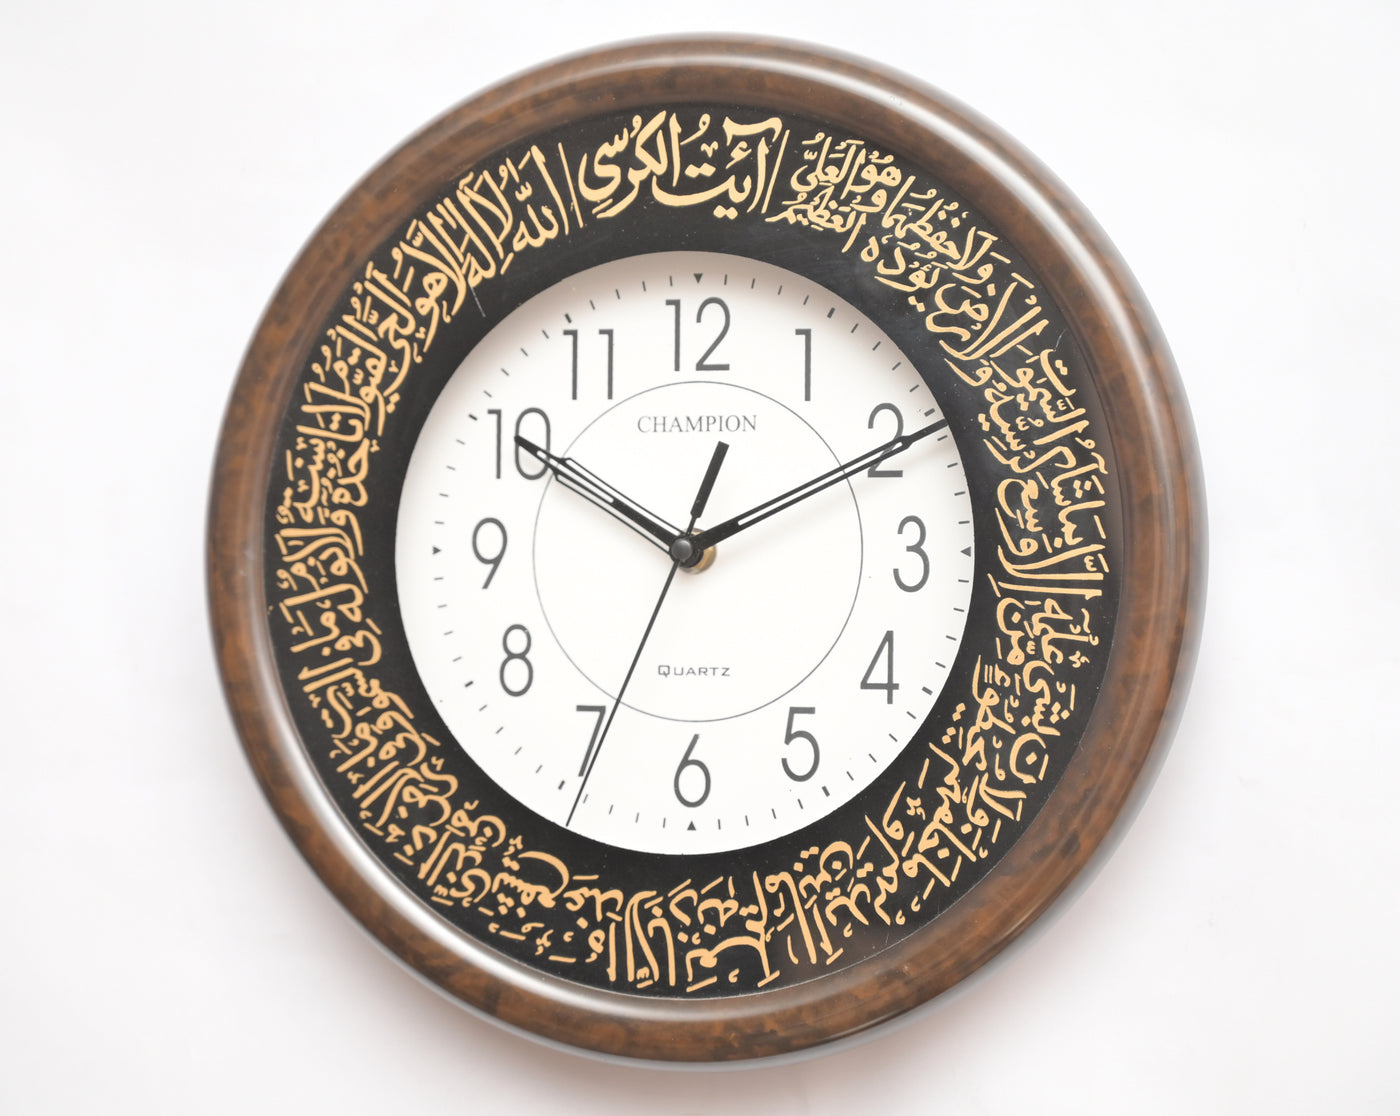 Champion 11" Brown Walnut Islamic Supersaver Wall Clock